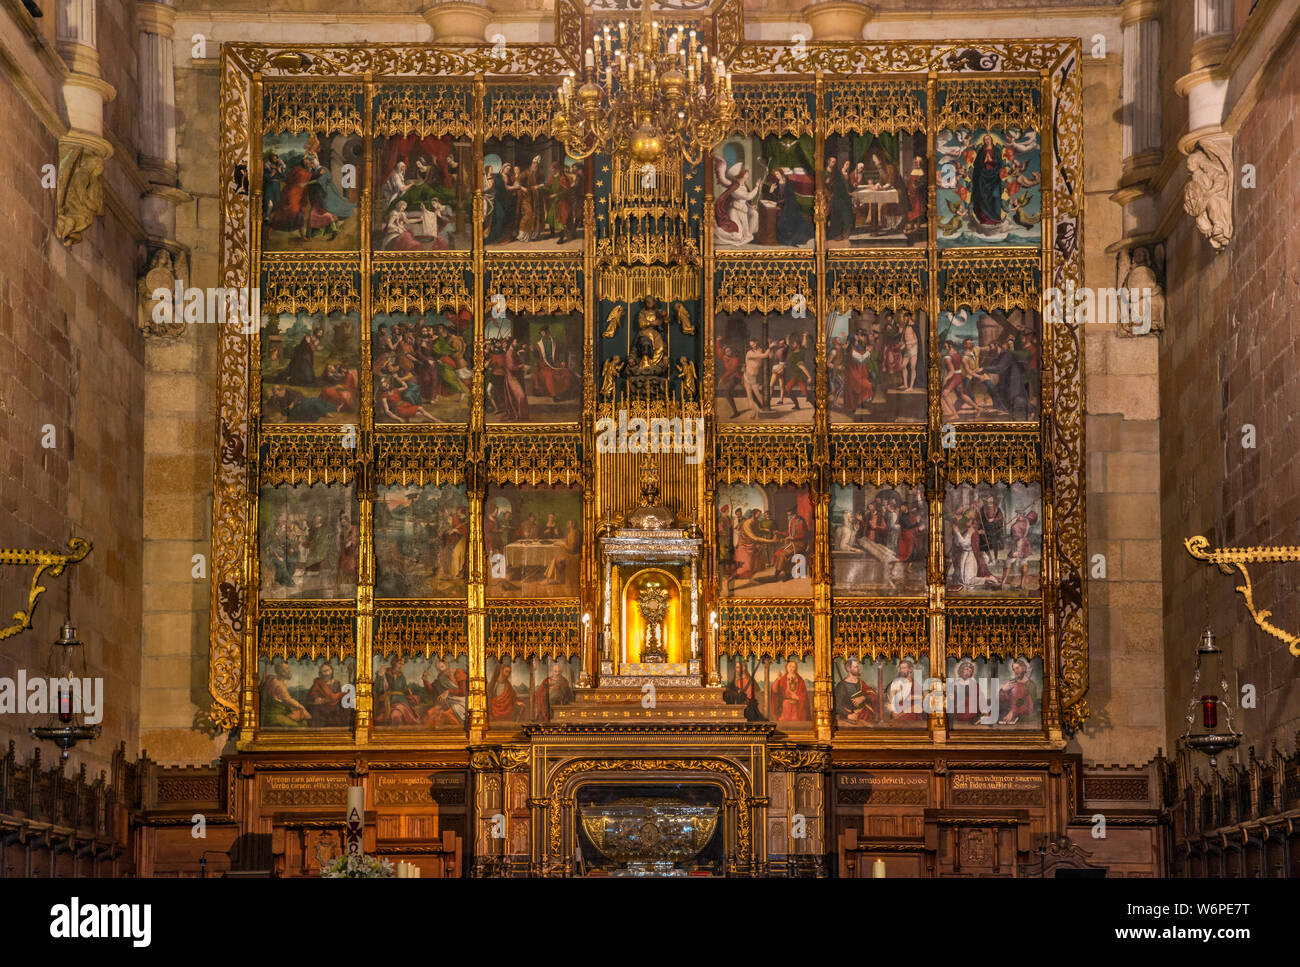 Retablo at main altar at Basilica de San Isidoro in Leon, Castilla y Leon, Spain Stock Photo